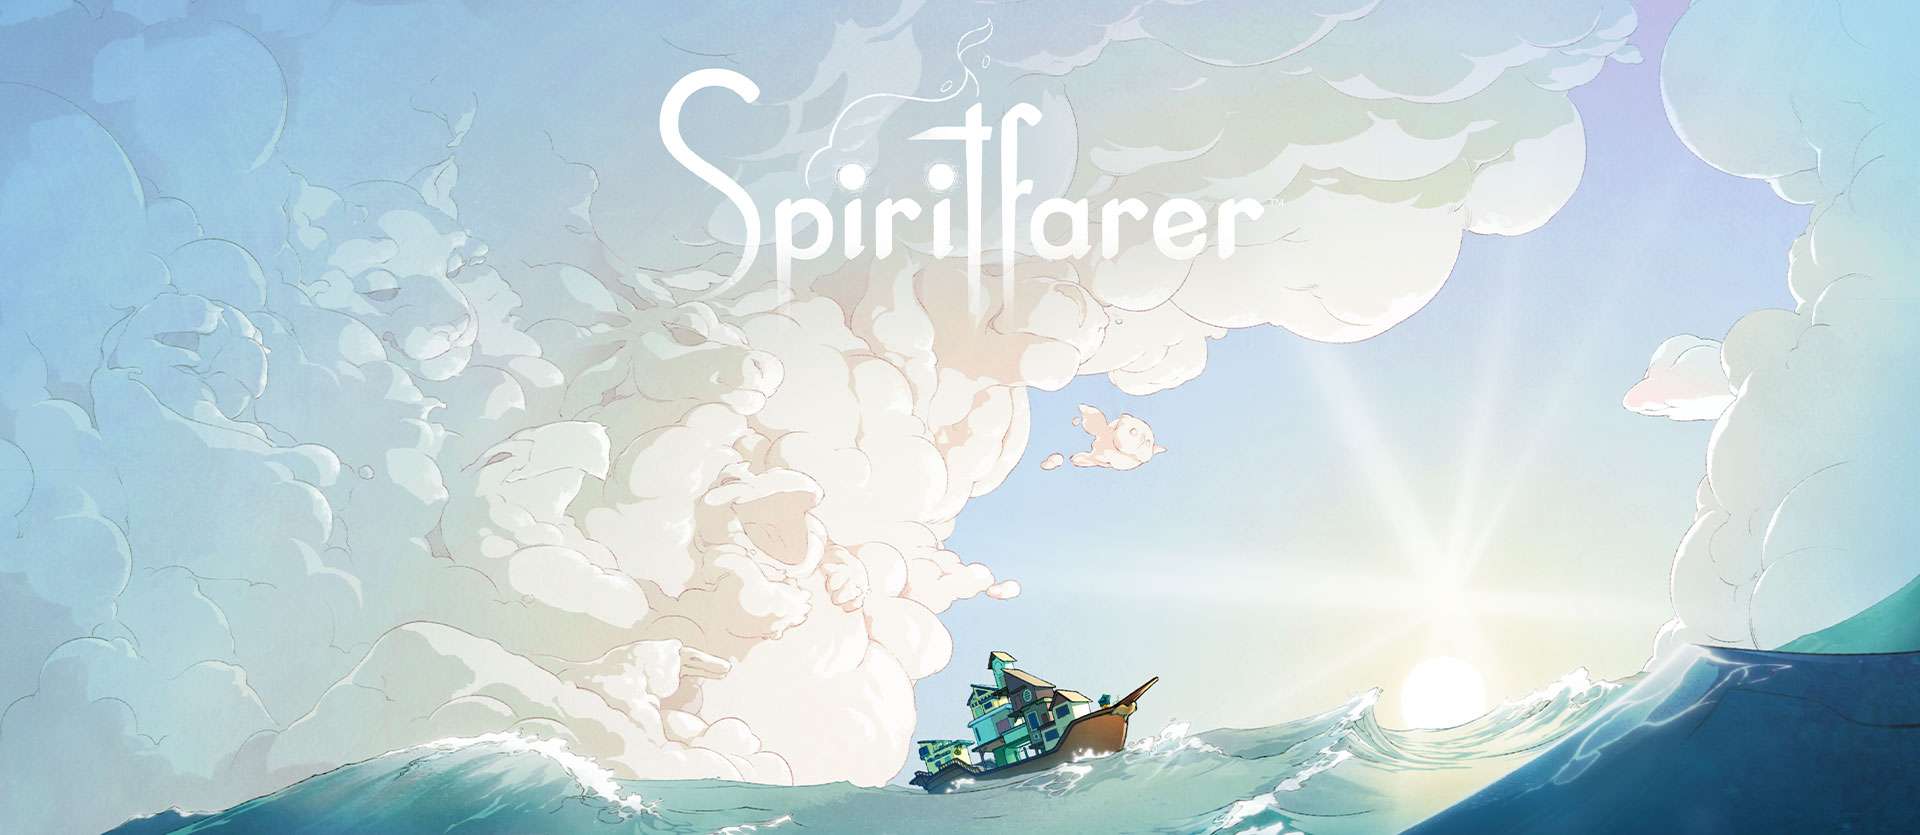 Spiritfarer recibe nuevo contenido al superar las 500.000 de copias vendidas